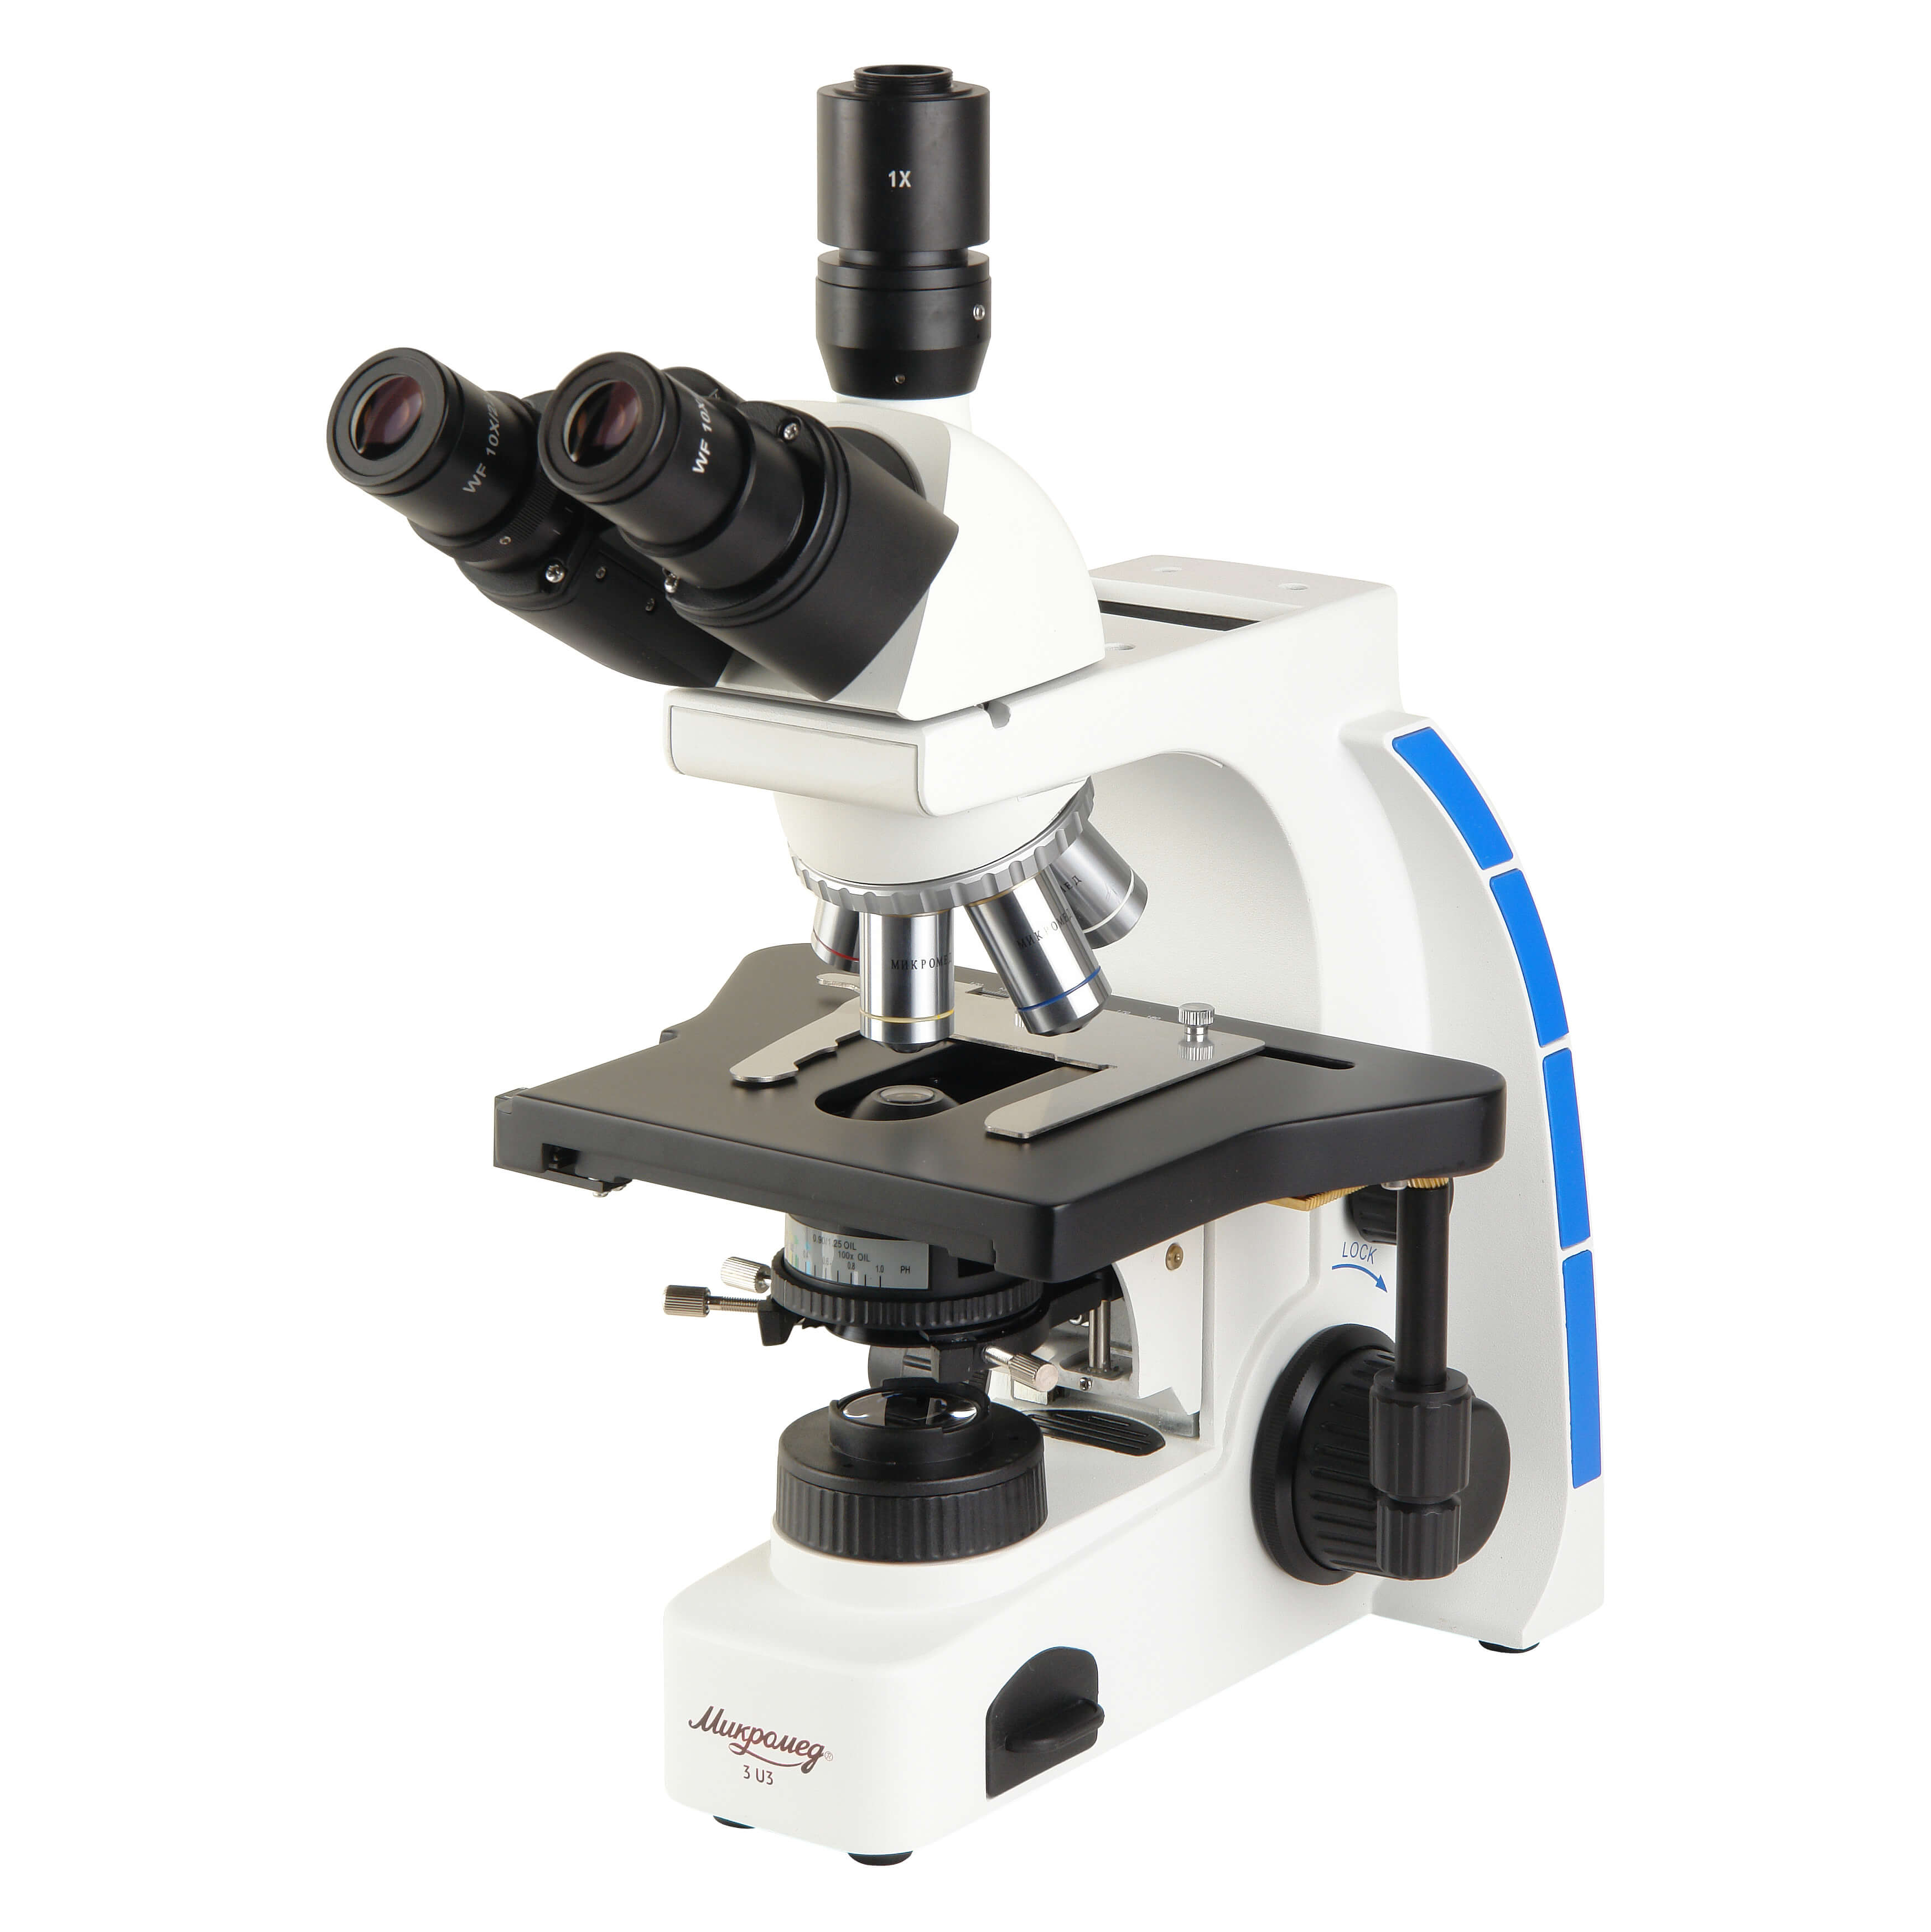 Микромед 20. Микроскоп биологический Микромед 2. Микроскоп Микромед 3. Микроскоп Микромед Полар 3. Мини-микроскоп Микмед Duo 7x18.